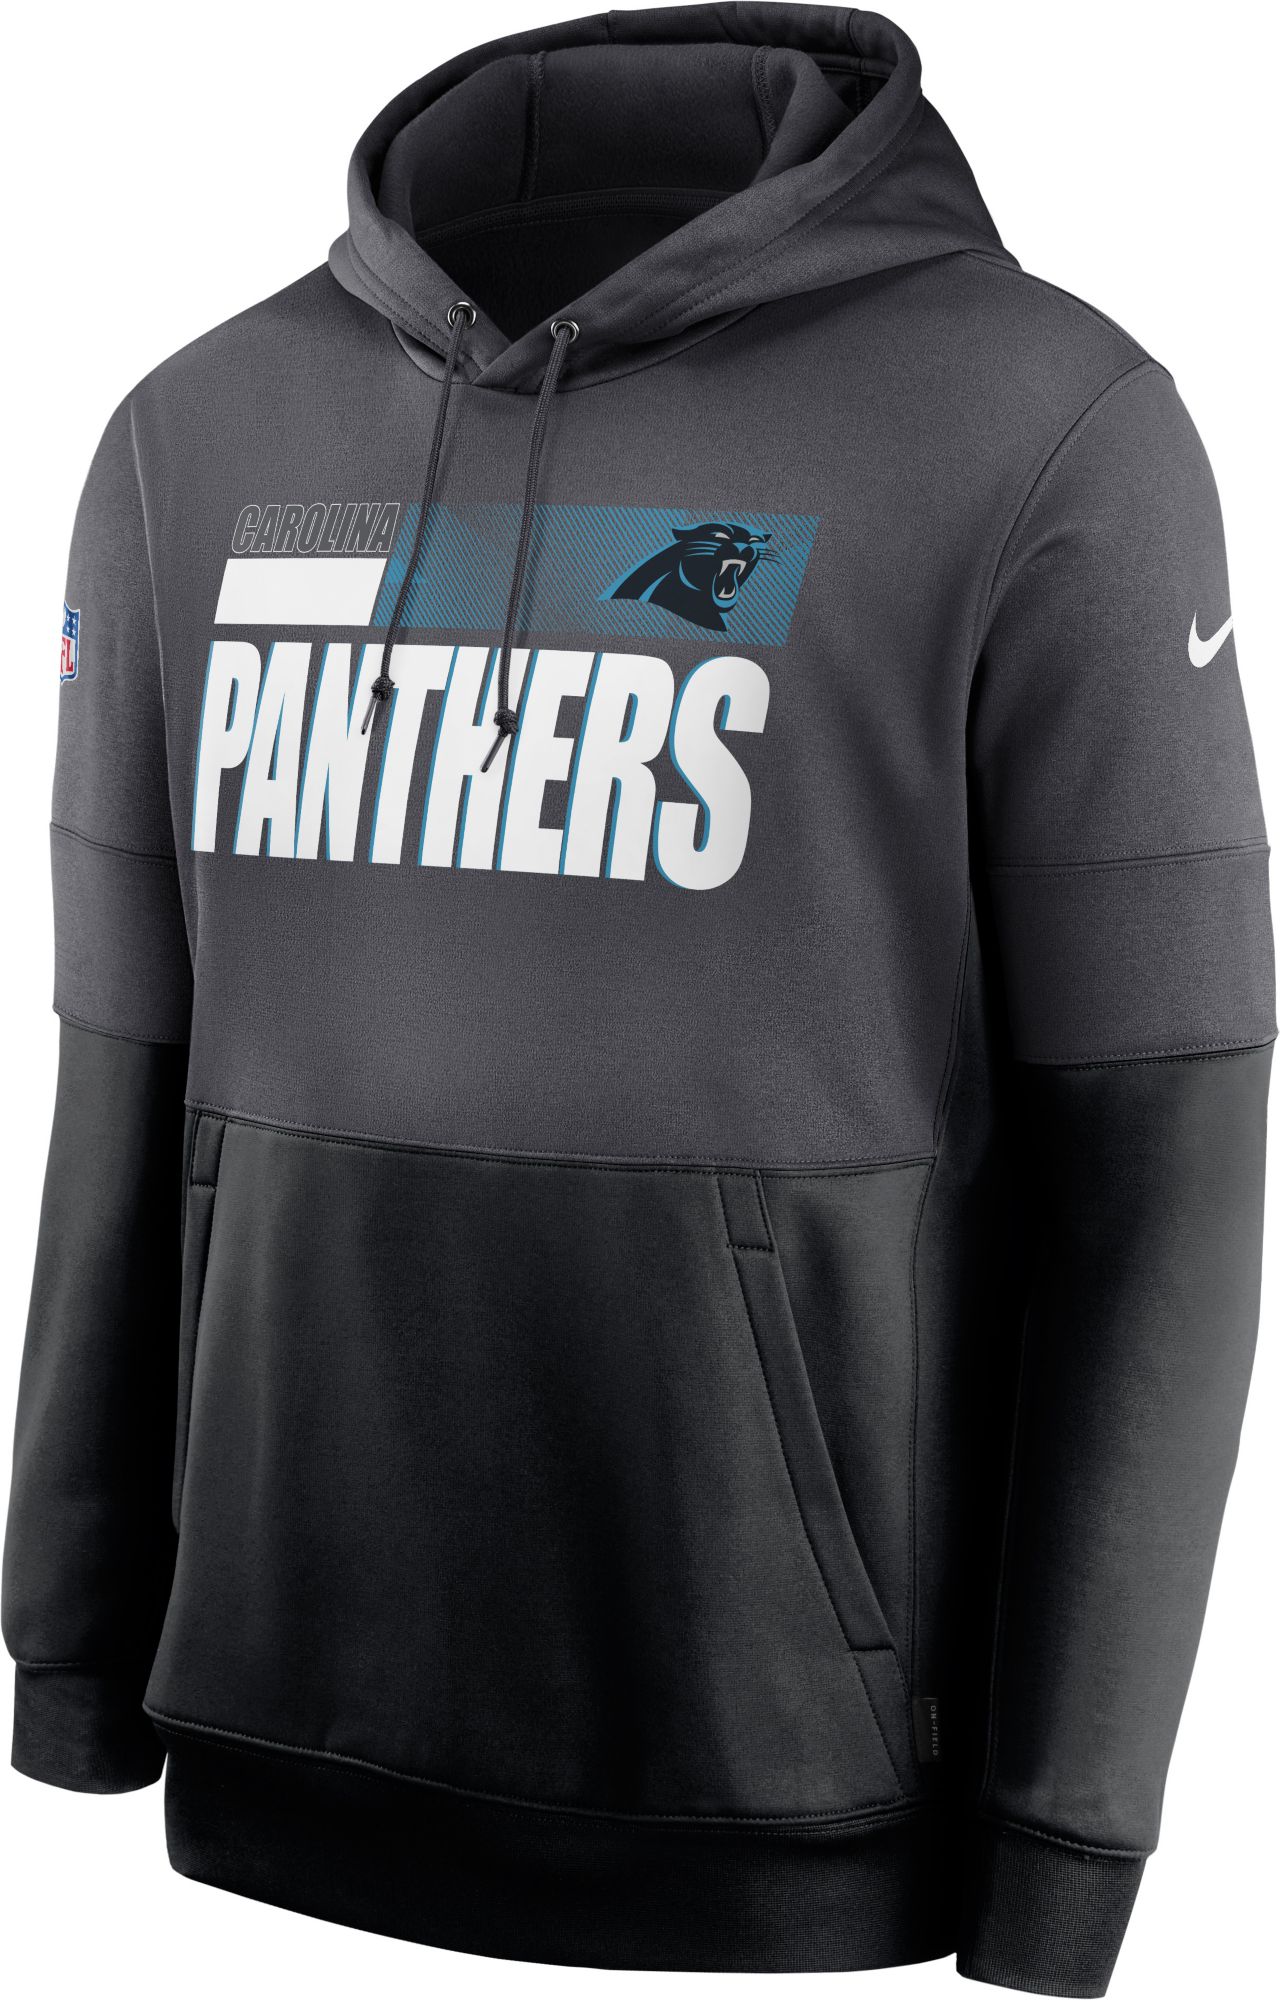 panthers sideline hoodie